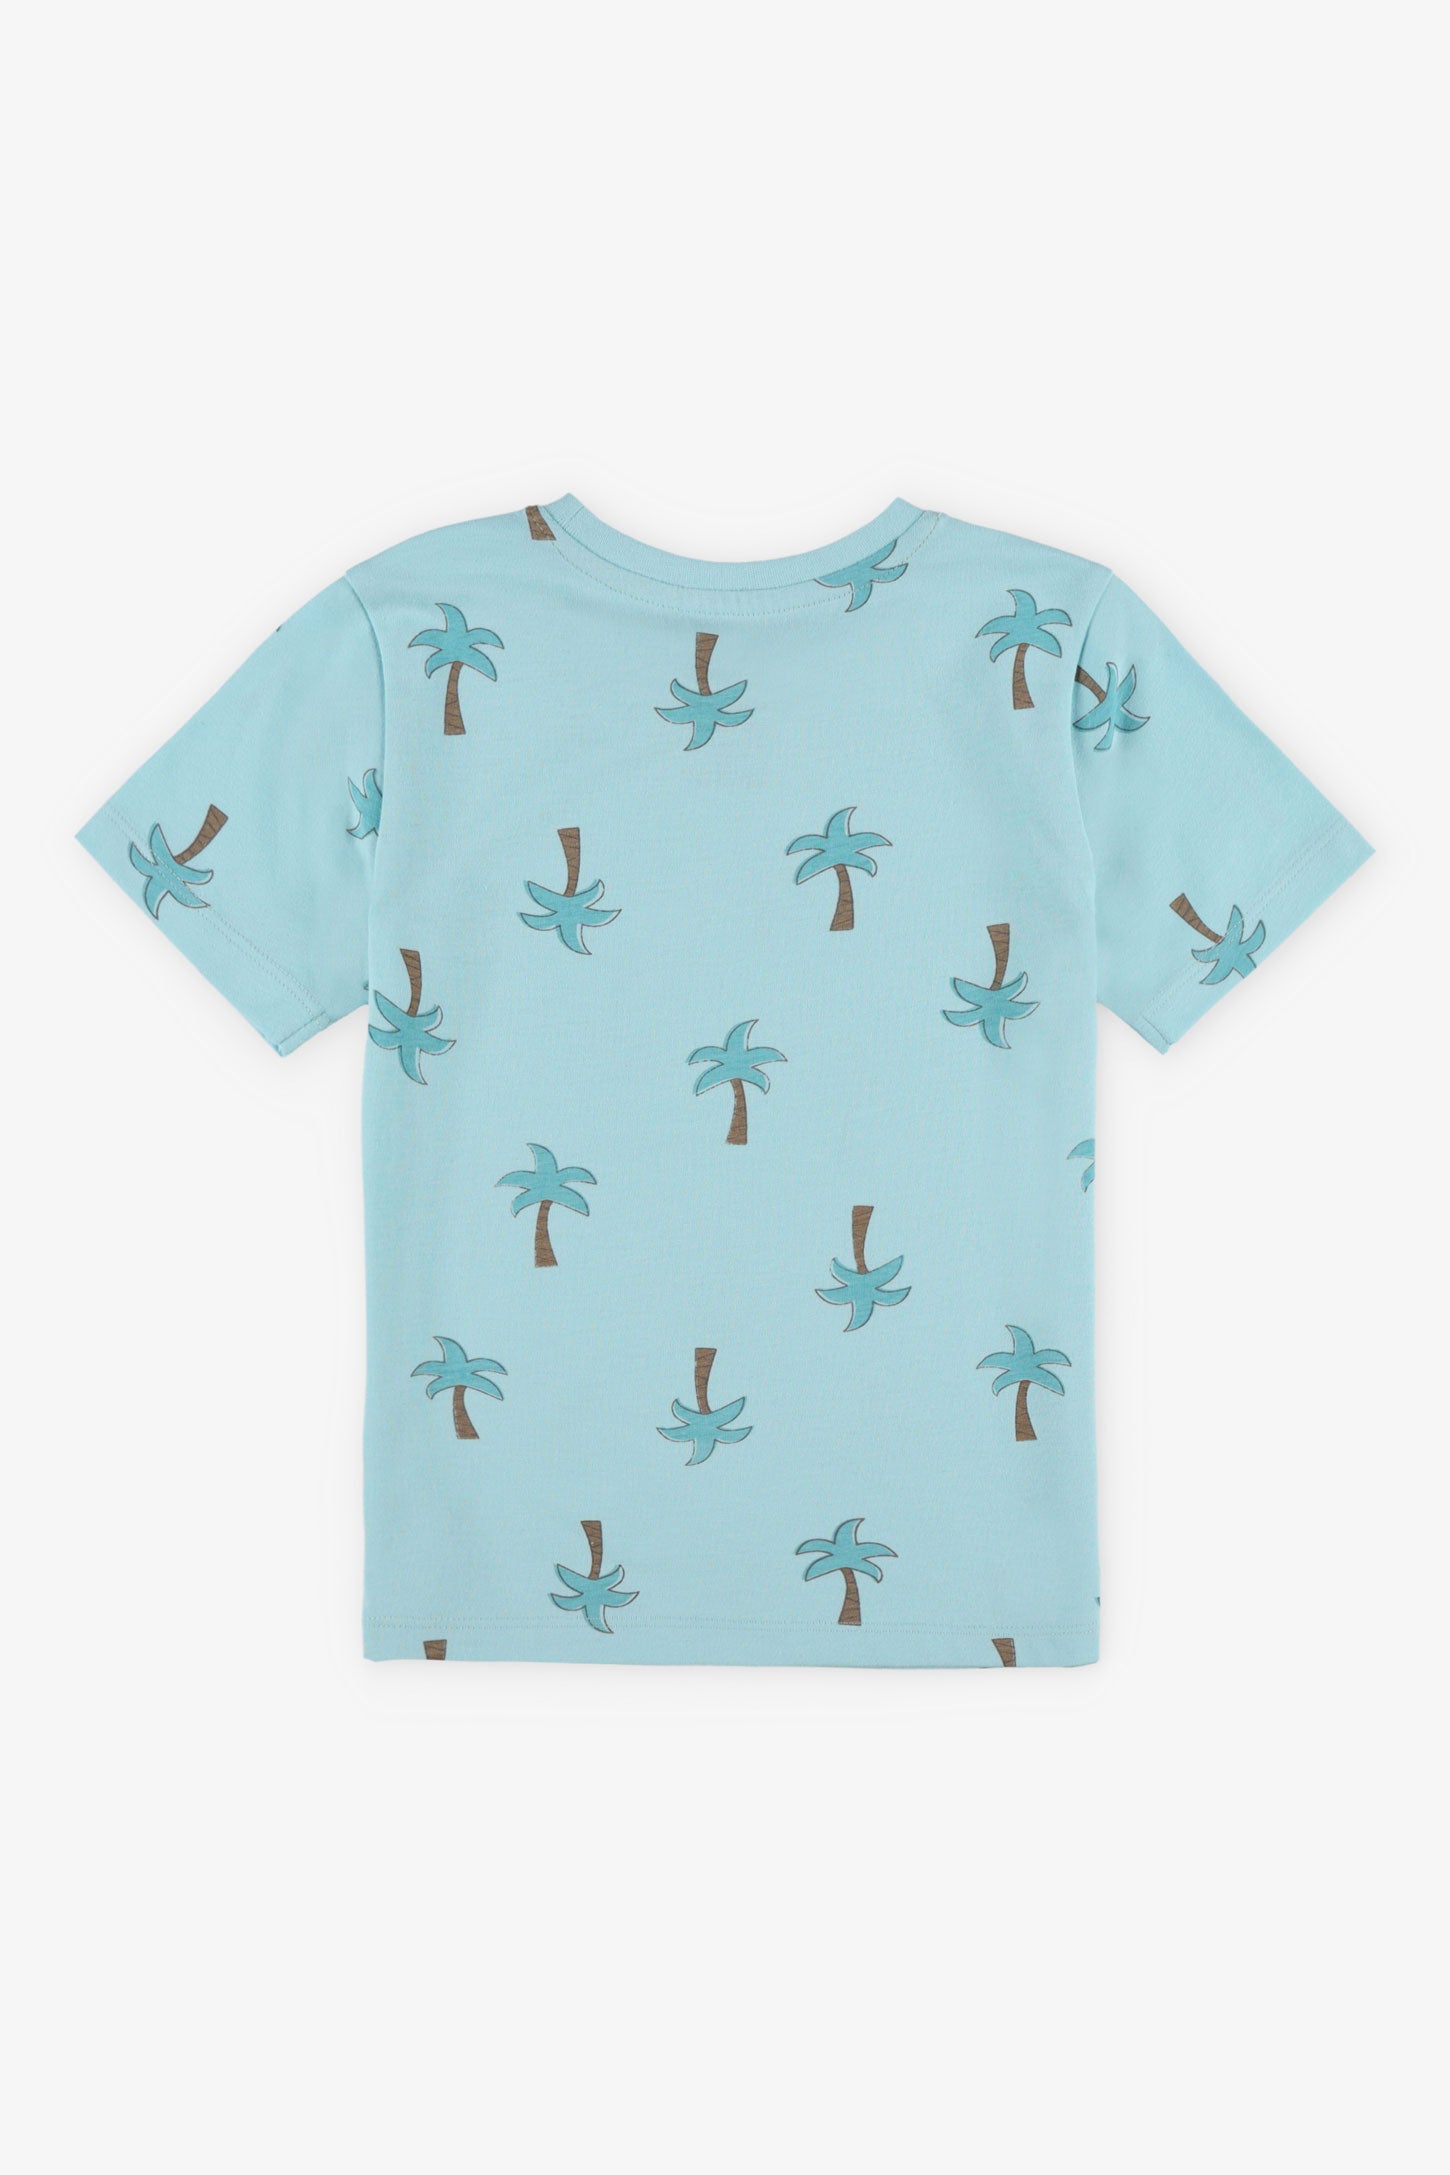 T-shirt col rond imprimé en coton, 2/20$ - Enfant garçon && TURQUOISE/MULTI